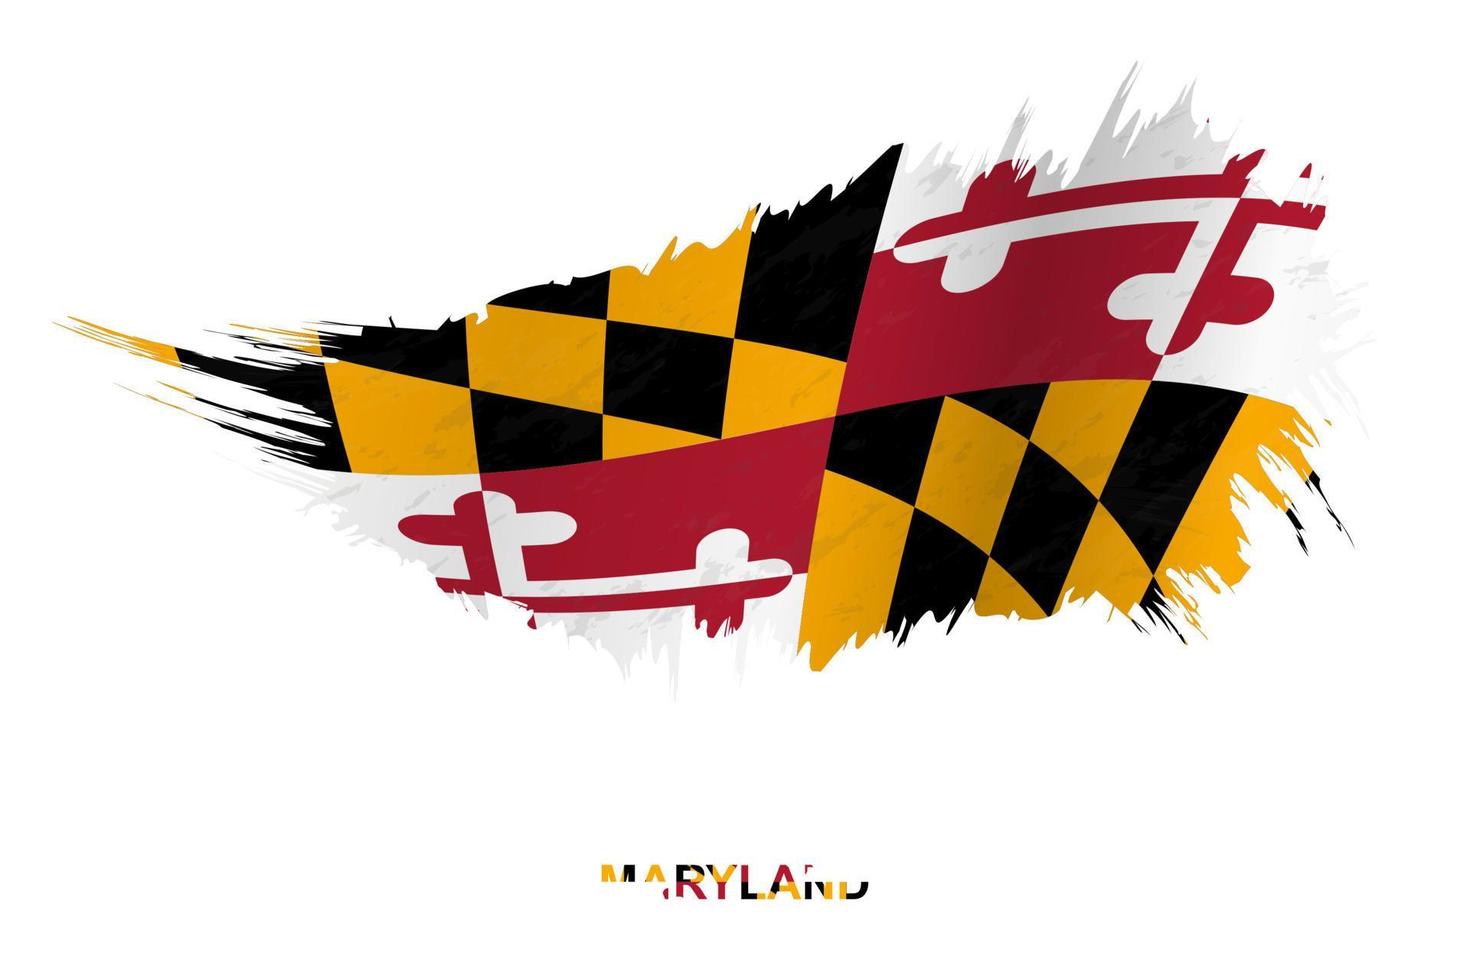 bandiera di Maryland stato nel grunge stile con agitando effetto. vettore